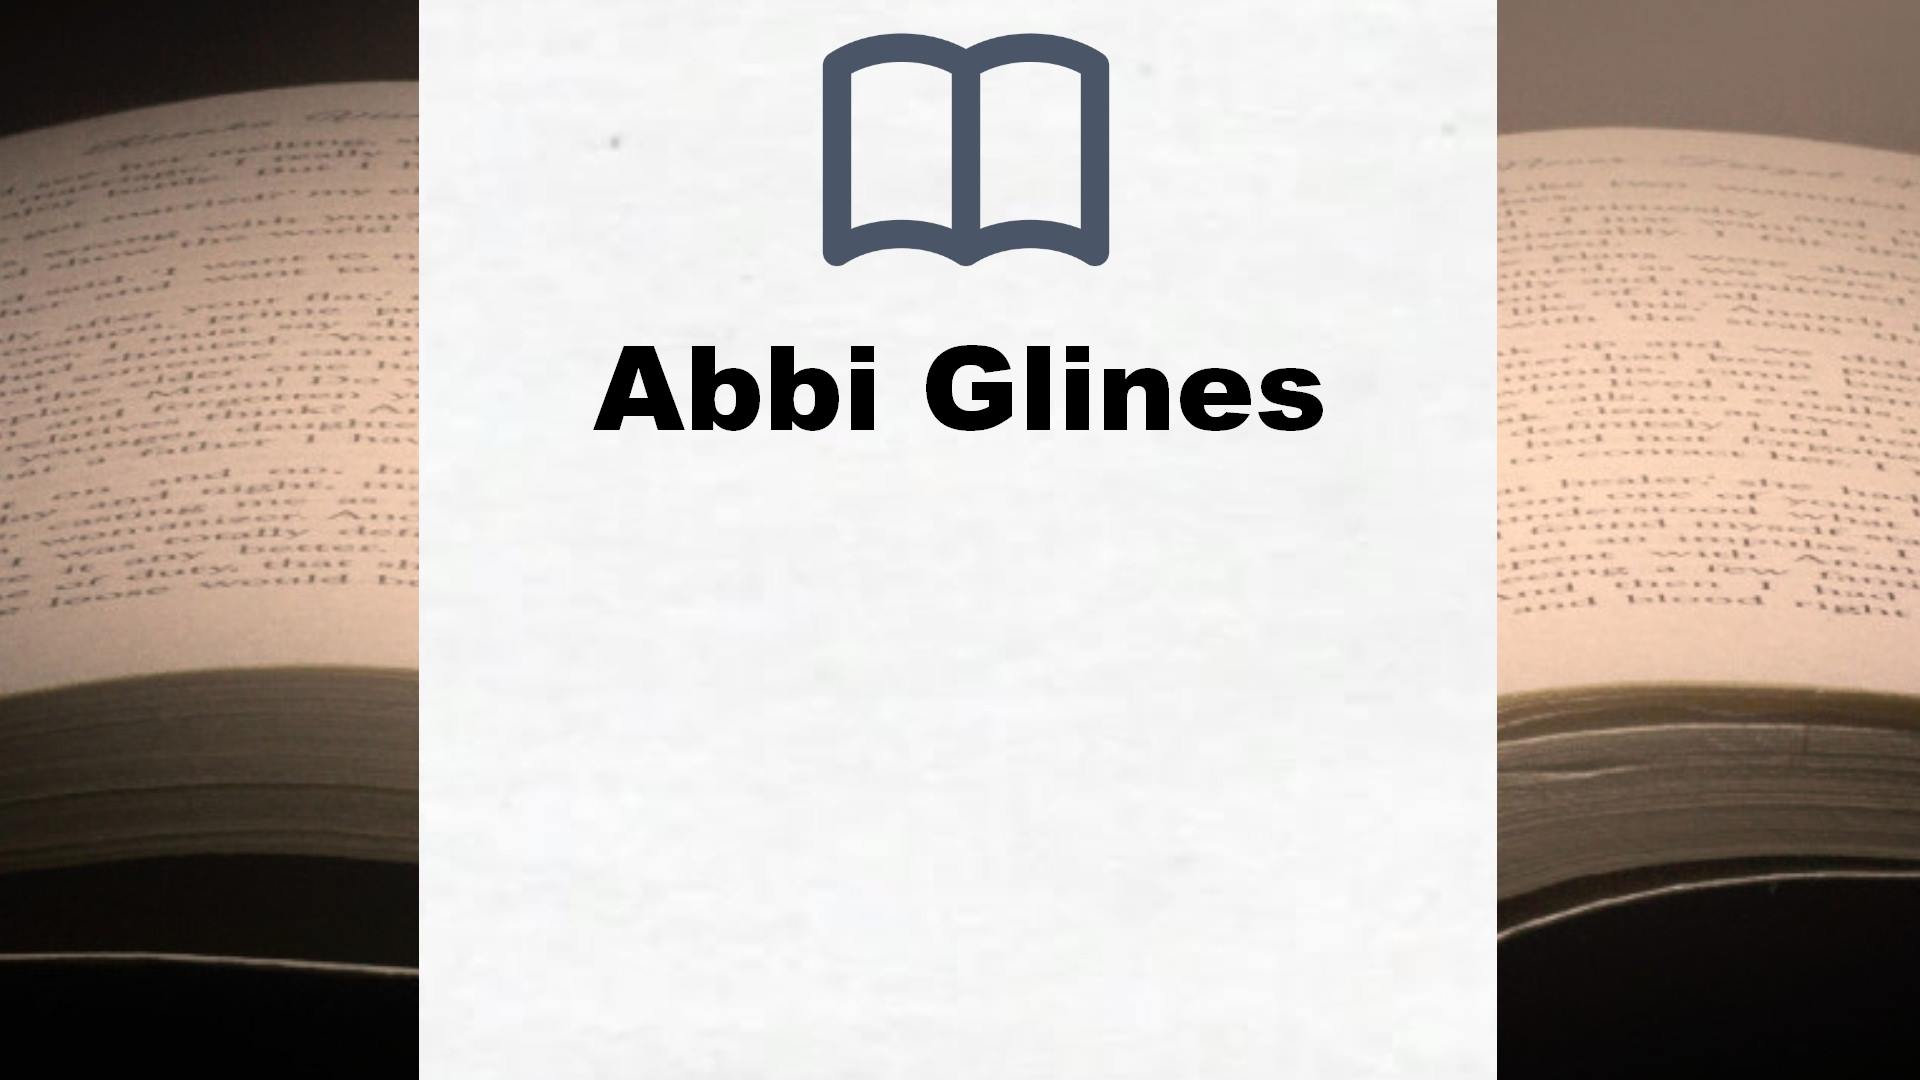 Libros Abbi Glines